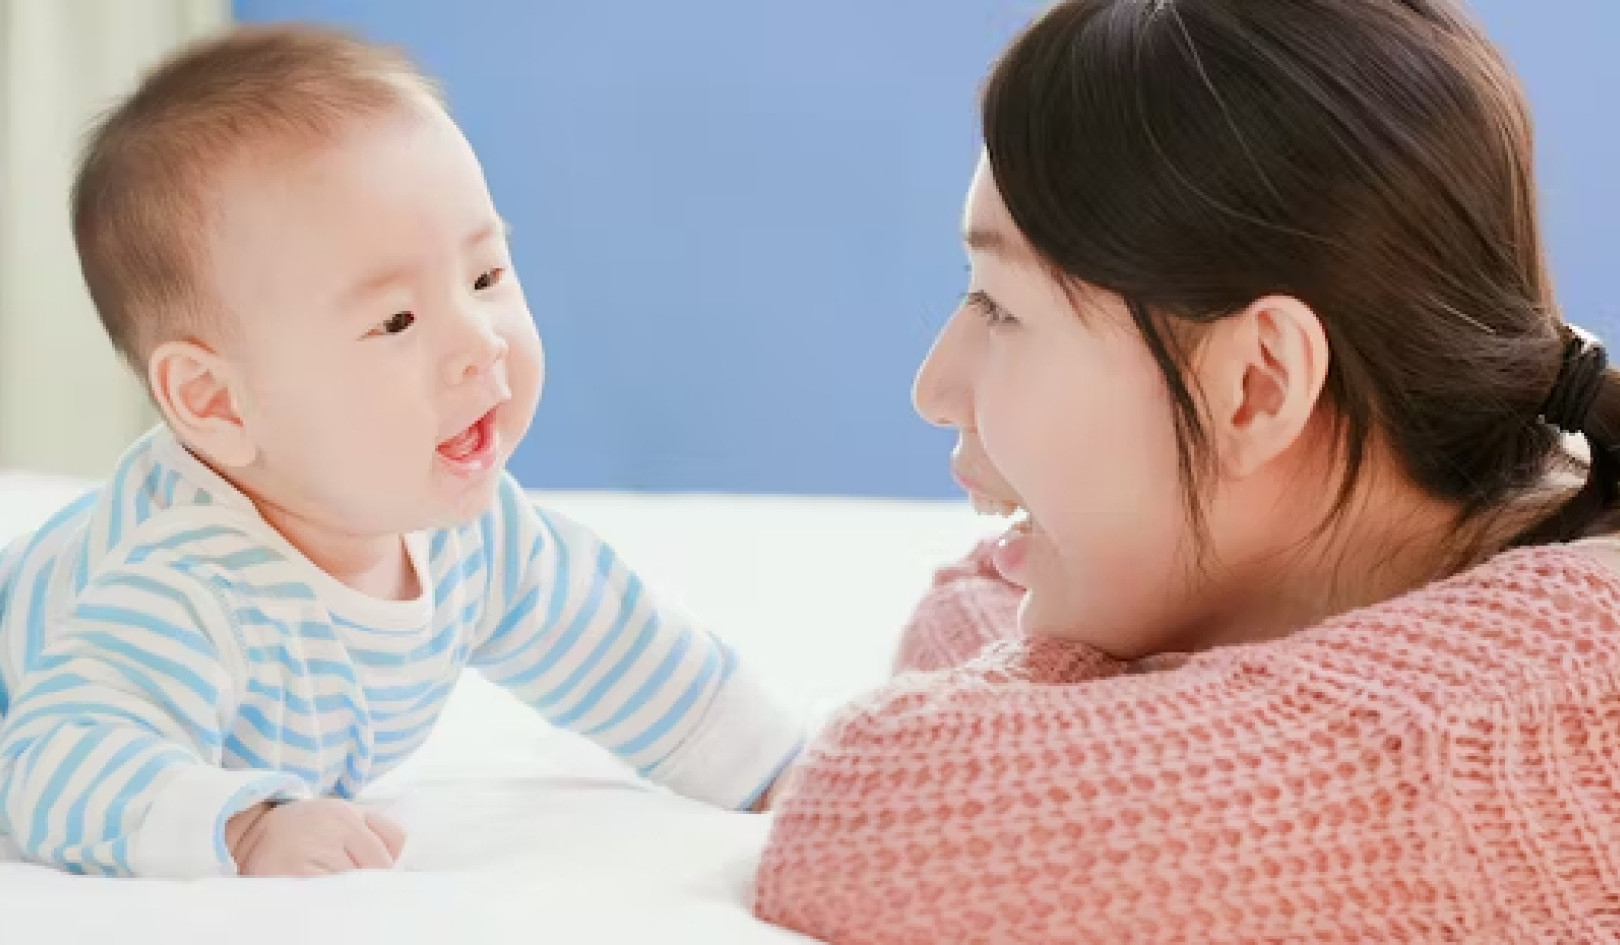 Η συζήτηση με μωρά μπορεί να συμβάλει στην ανάπτυξη του εγκεφάλου - Δείτε πώς να το κάνετε